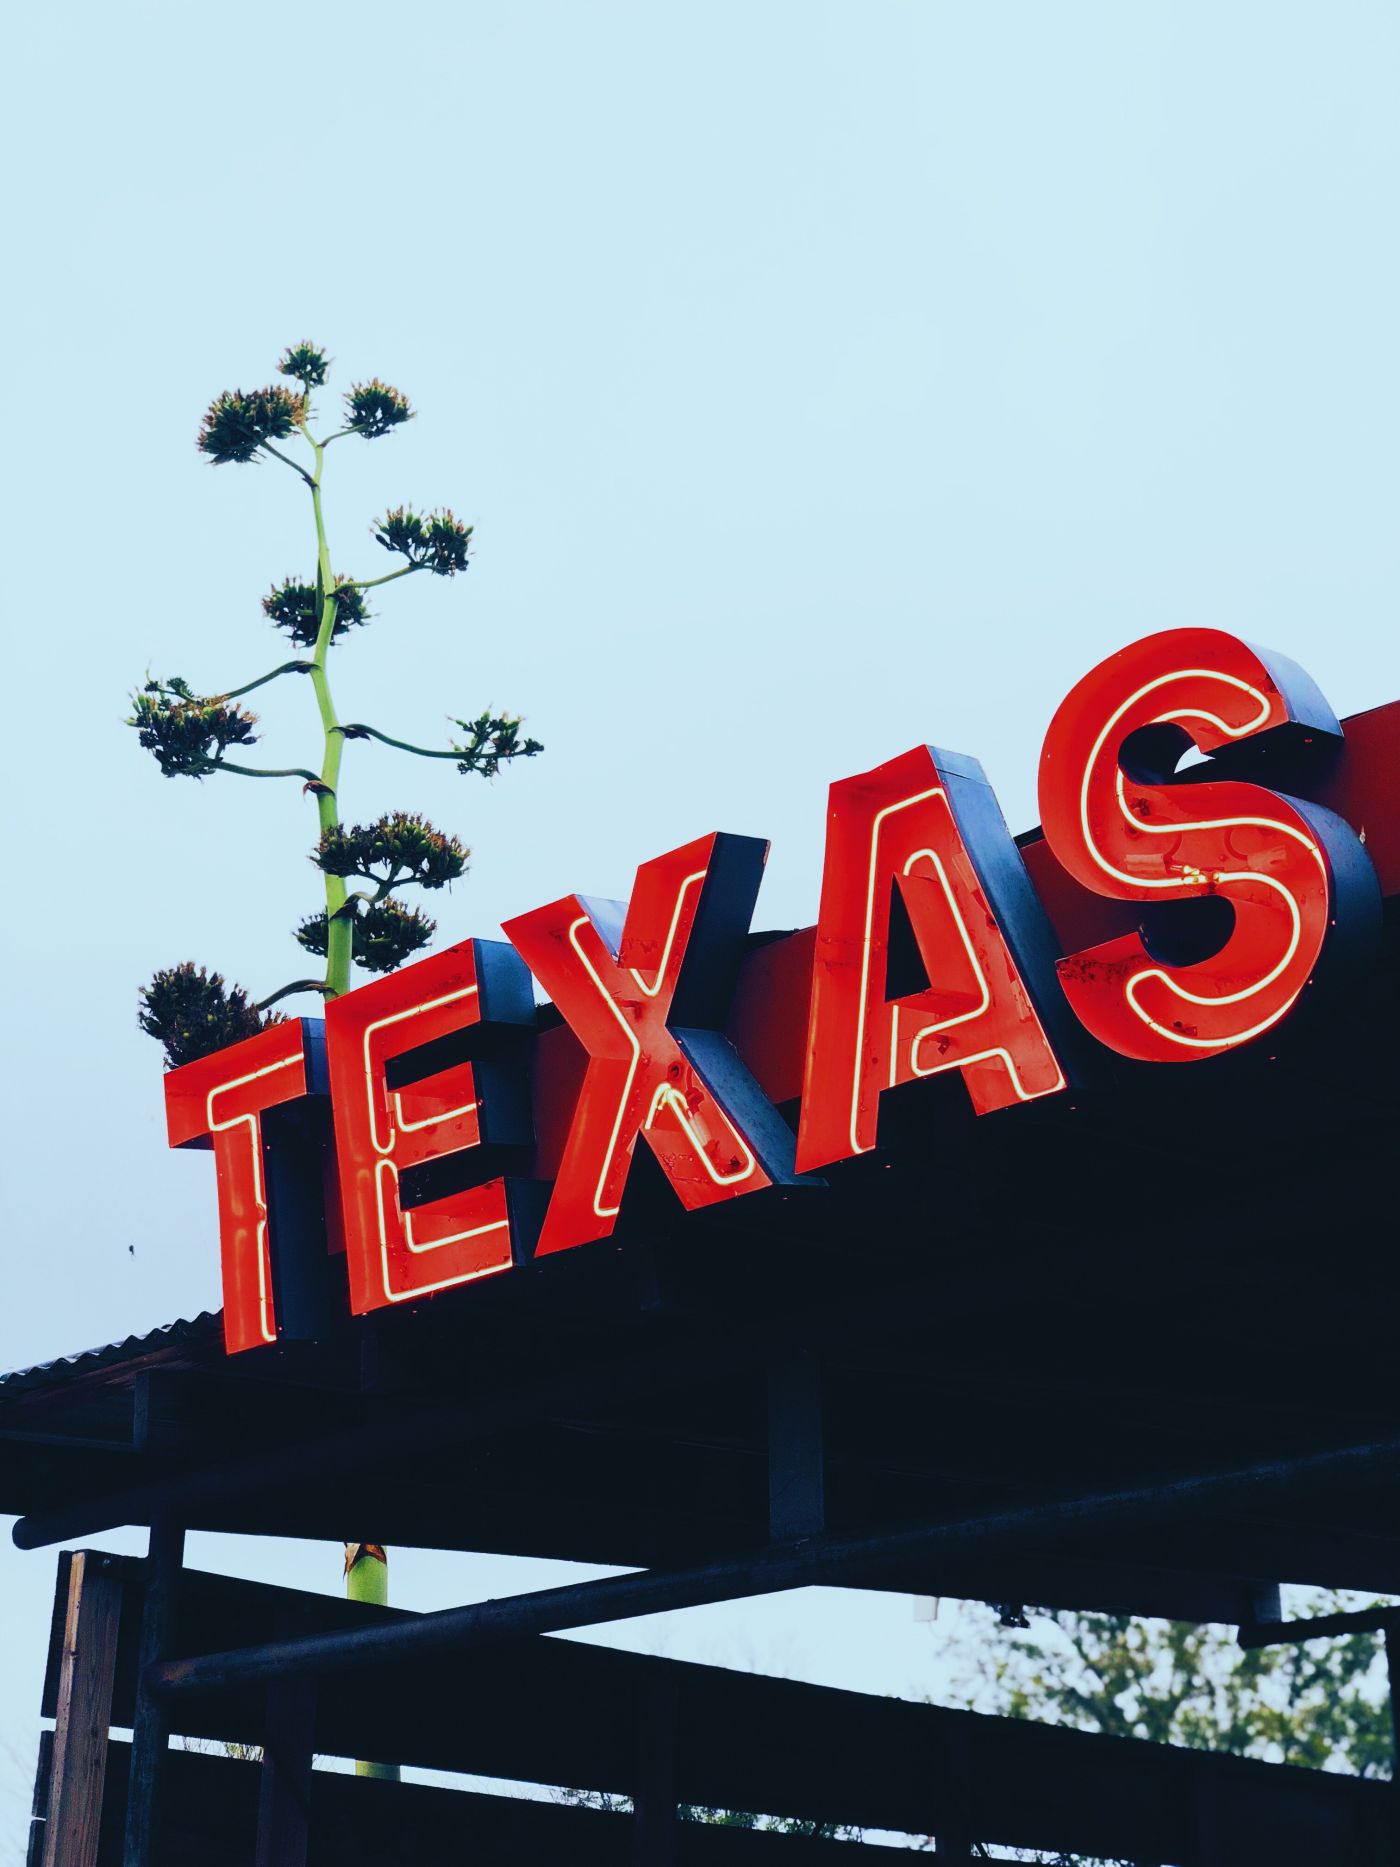 Neon Texas sign